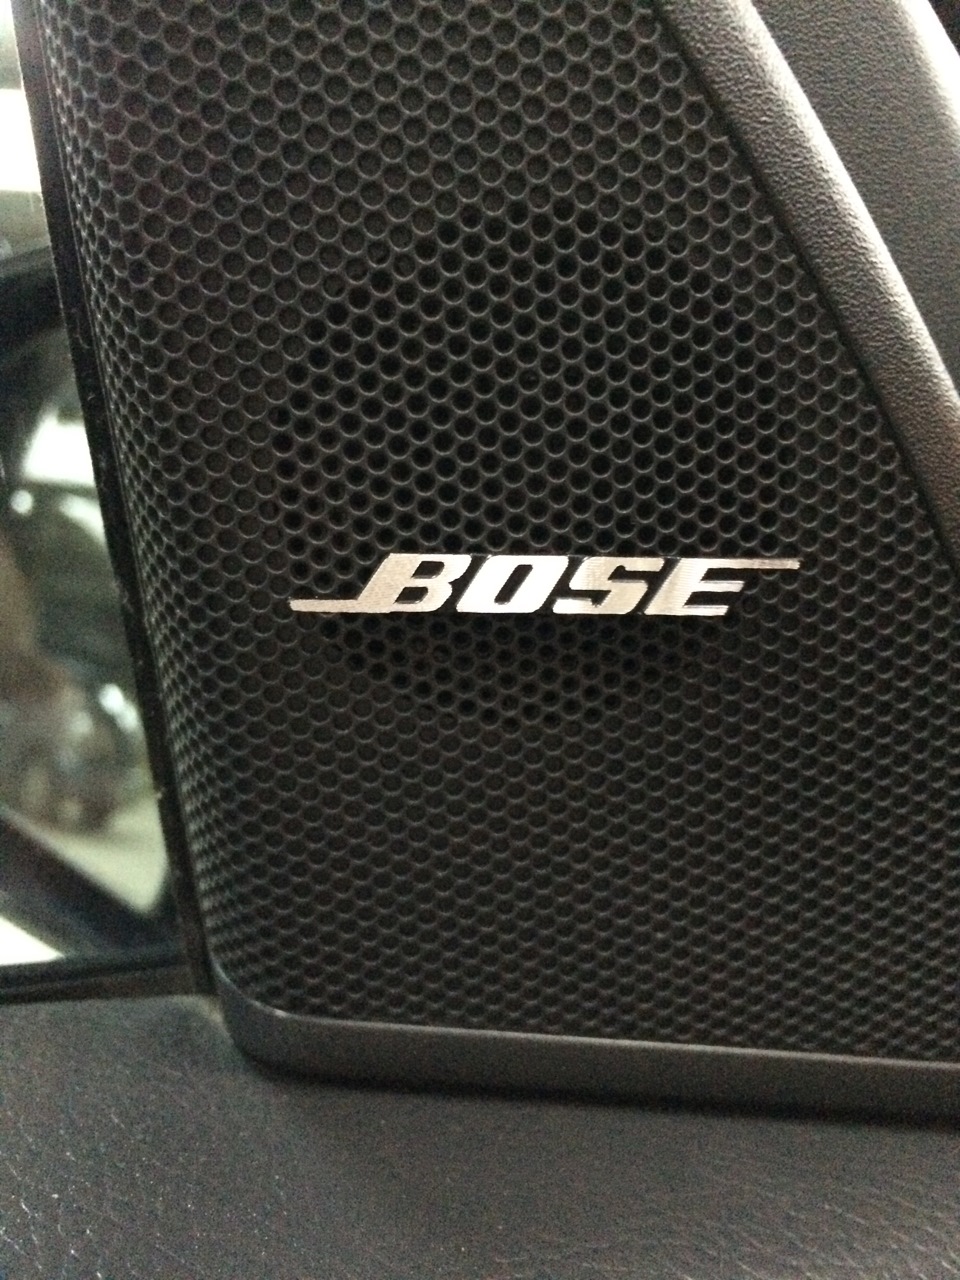 Bose авто. Автомобильная акустика Bose. Bose автозвук. Bose Mercedes. Динамики Bose автомобильные.